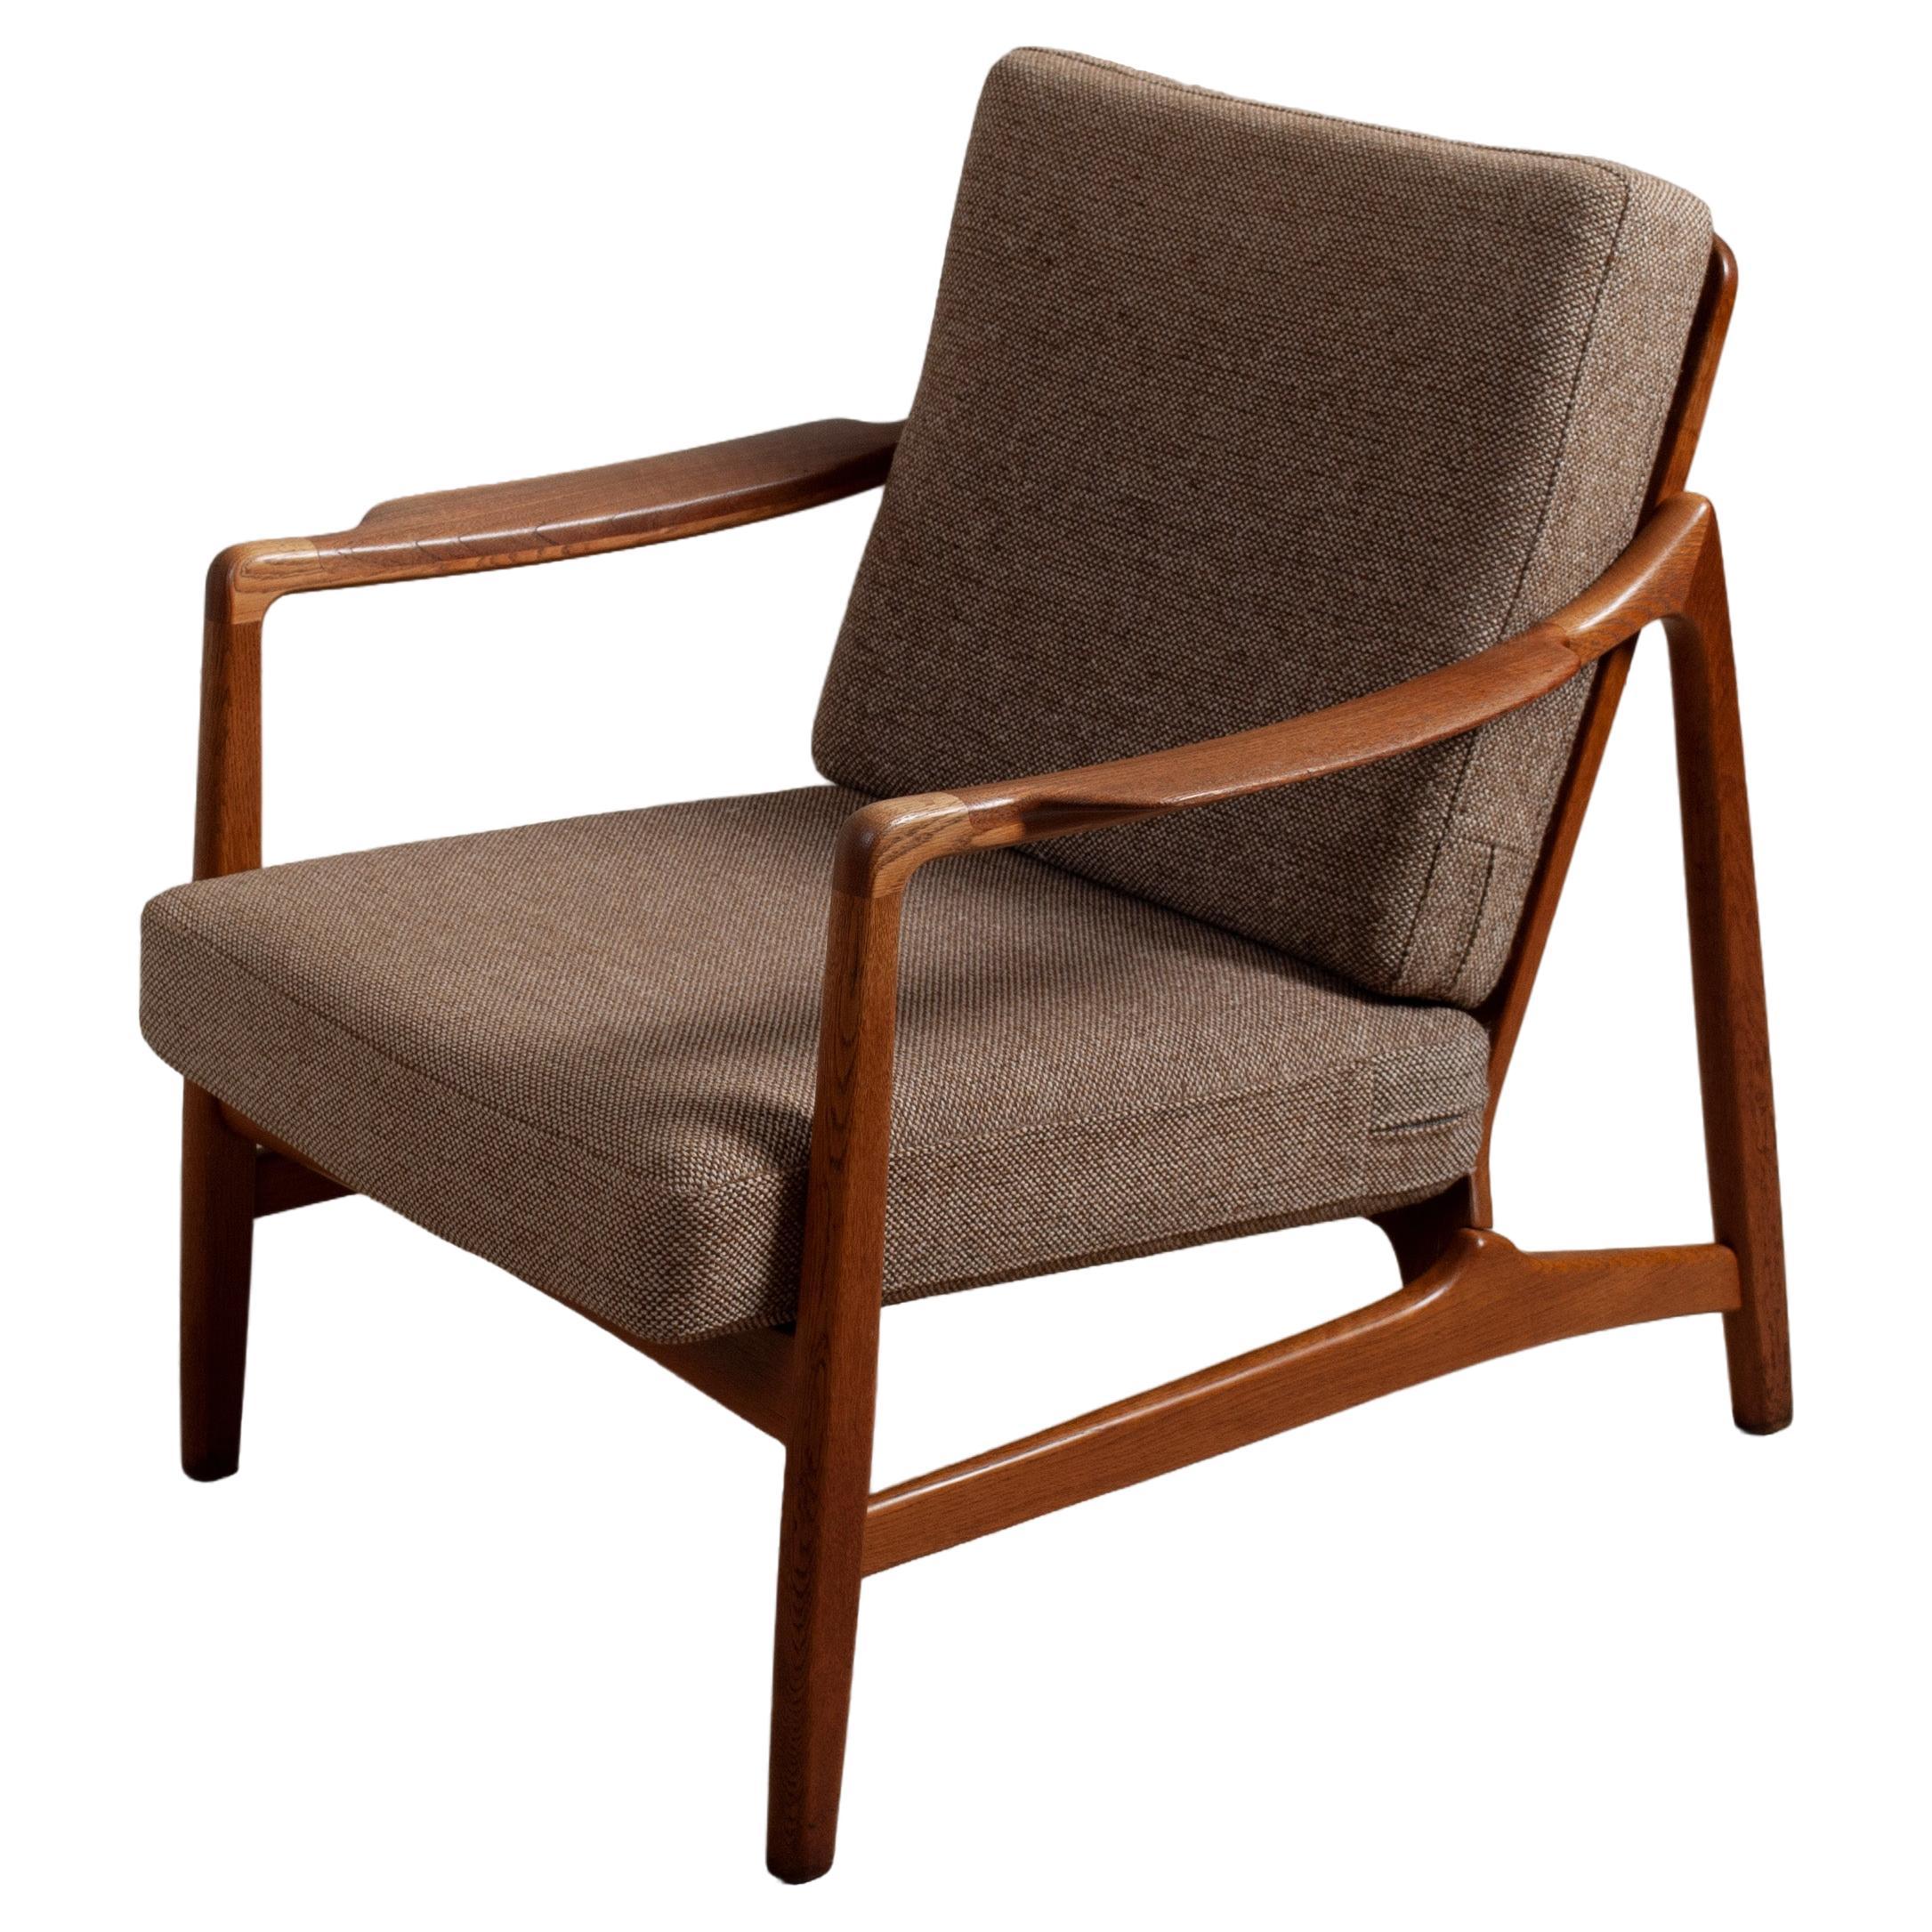 Modernist Oak Lounge Chair, Tove & Edvard Kindt Larsen